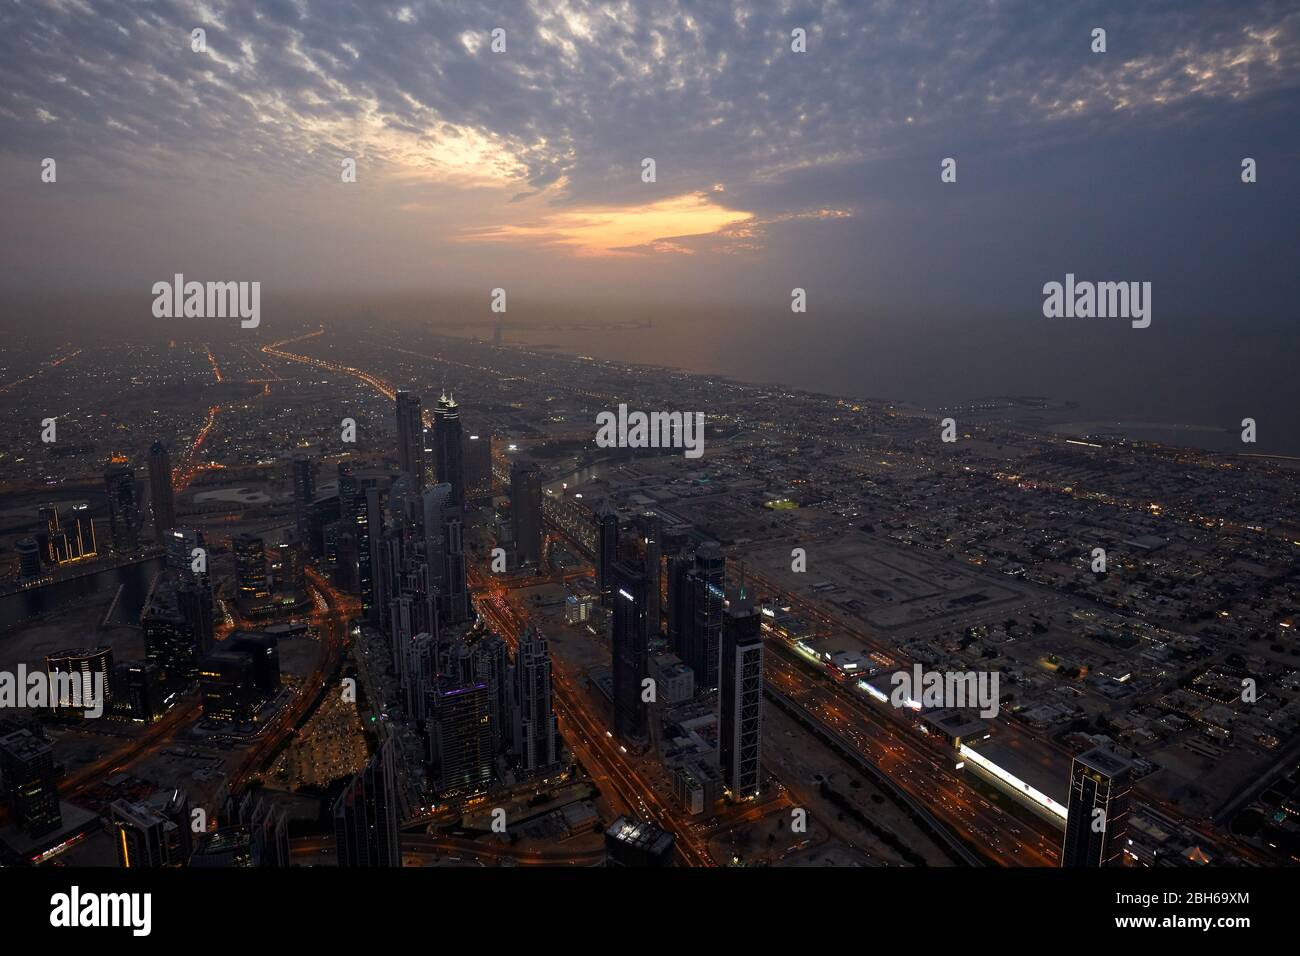 DUBAI, EMIRATI ARABI UNITI - 19 NOVEMBRE 2019: Dubai illuminata città vista ad alta angolazione con grattacieli al tramonto da Burj Khalifa Foto Stock